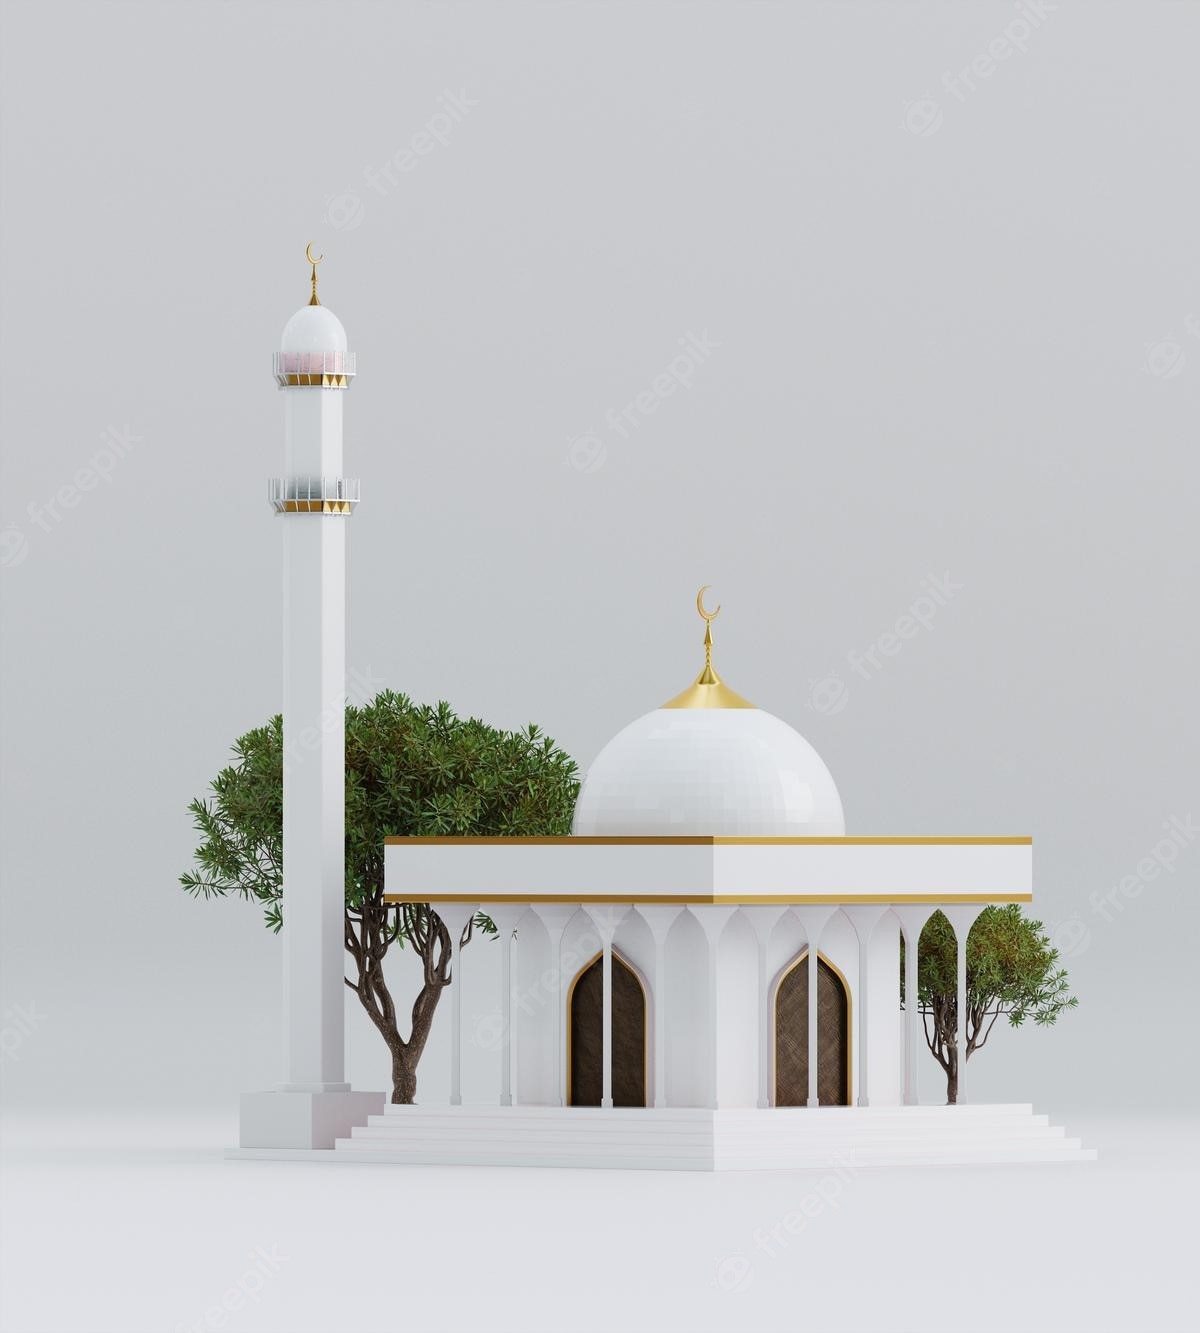 عکس منحصر به فرد و خاص از مسجد سفید با درختی سبز کنار آن 